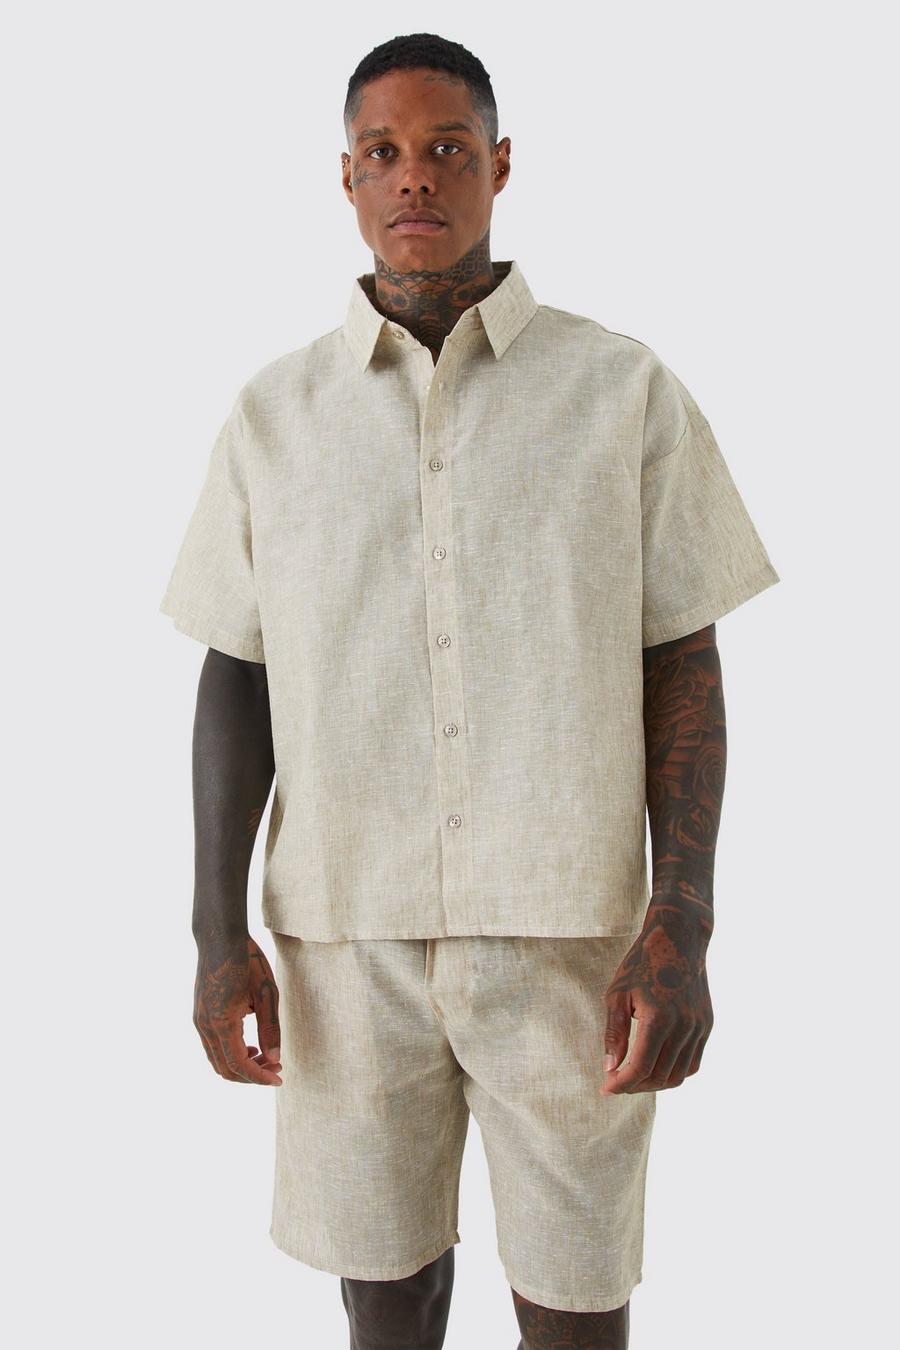 Natural Boxy Linen Look Shirt And Short Set